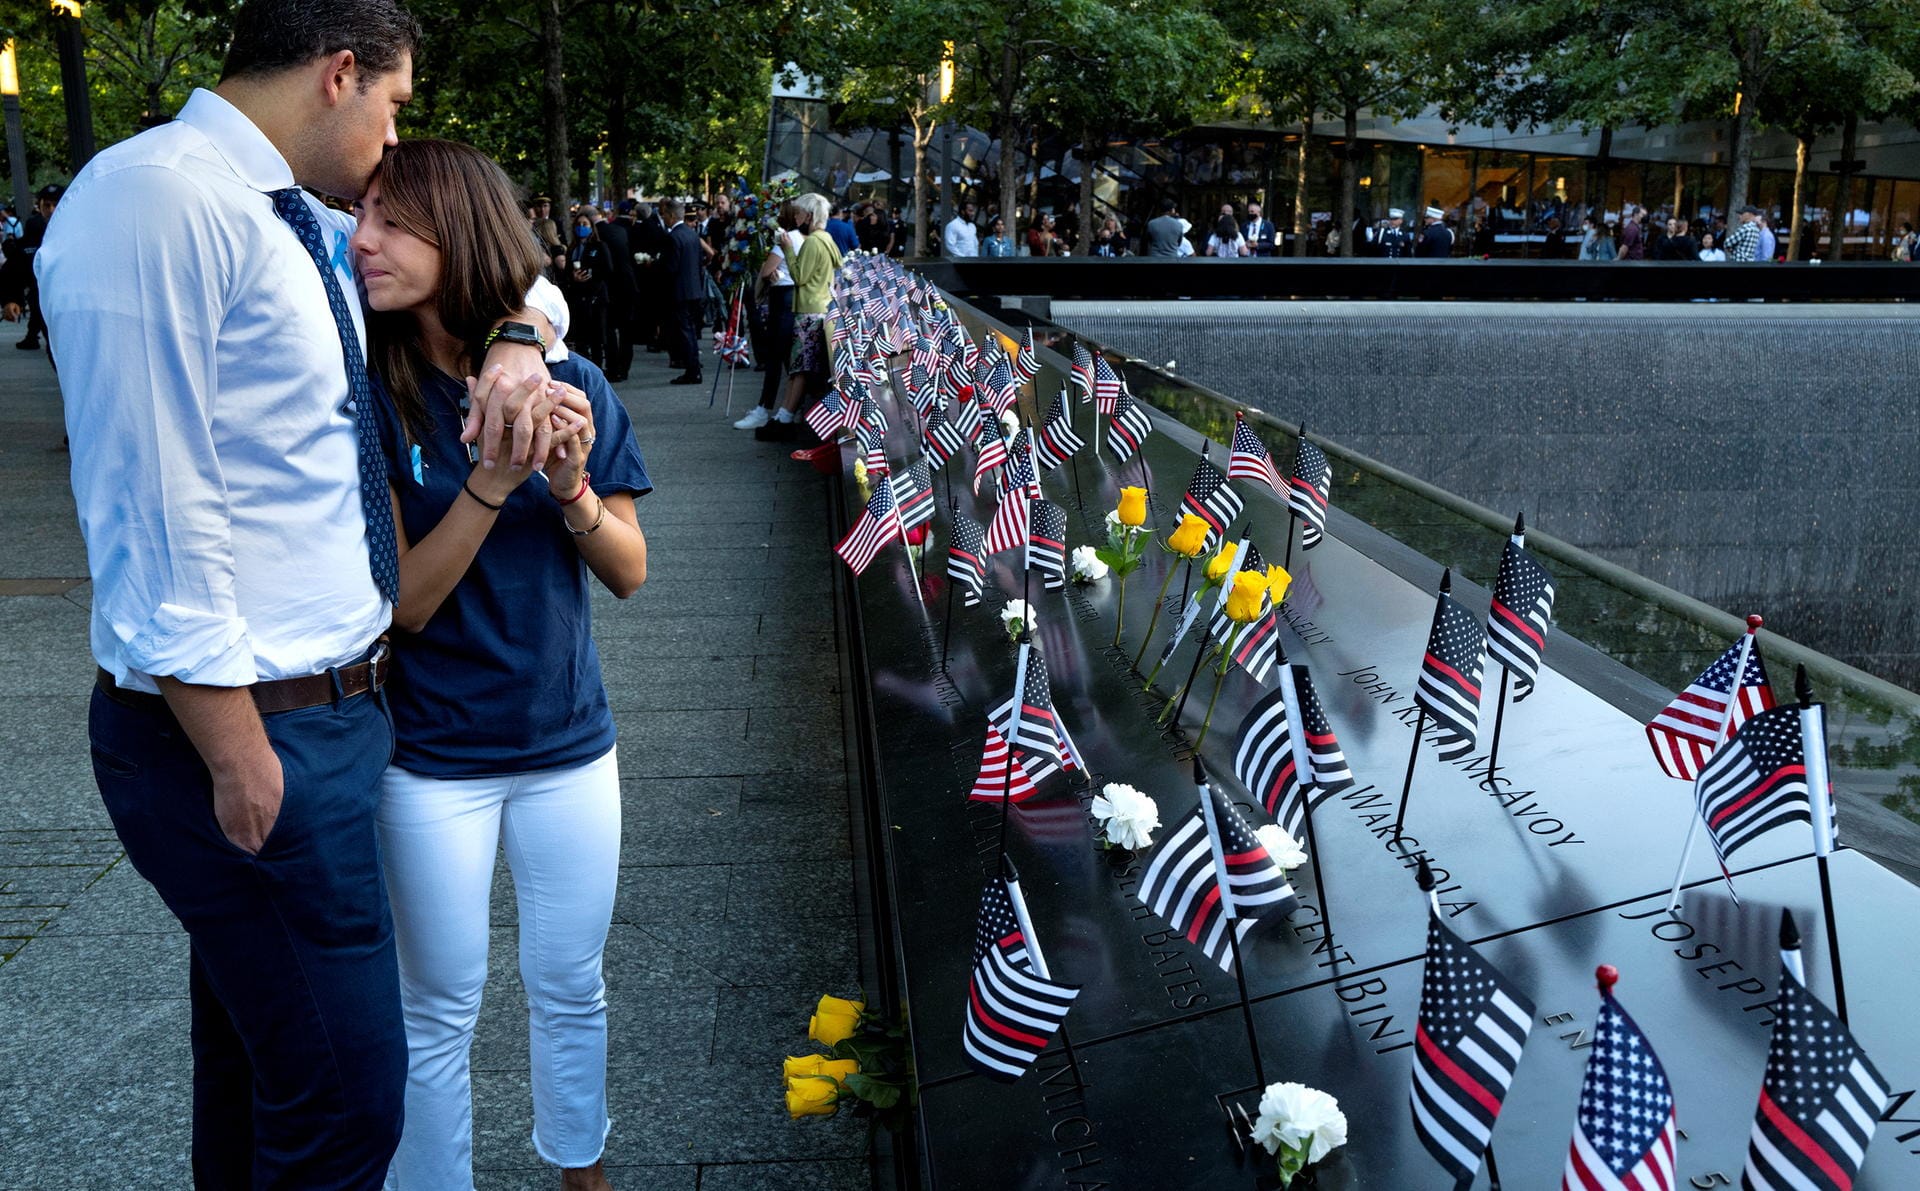 Gedenken an die Terroranschläge vom 11. September 2001 in Amerika: Zum 20. Jahrestag haben sich zahlreiche Menschen am Ground Zero, dem ehemaligen Standort des World Trade Center, versammelt. Von den Zwillingstürmen blieb nur noch Schutt und Asche übrig, fast 3.000 Menschen starben an diesem Tag. Die Gedenkzeremonie in Bildern.